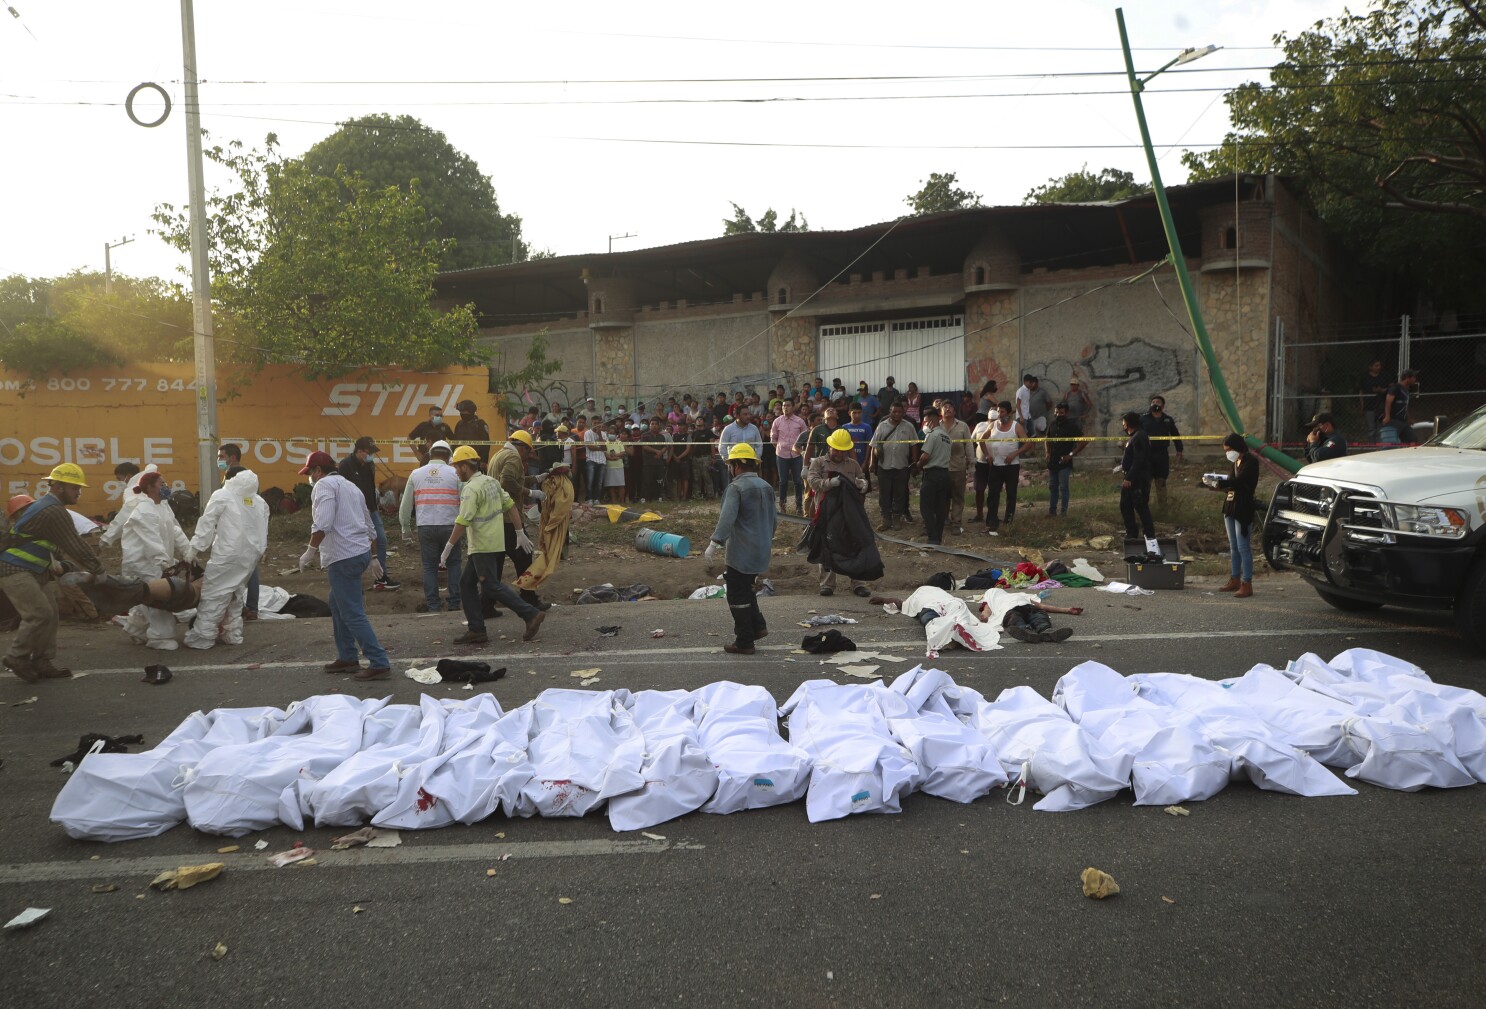 México: supervivientes narran el horror que dejó 55 muertos - San Diego  Union-Tribune en Español